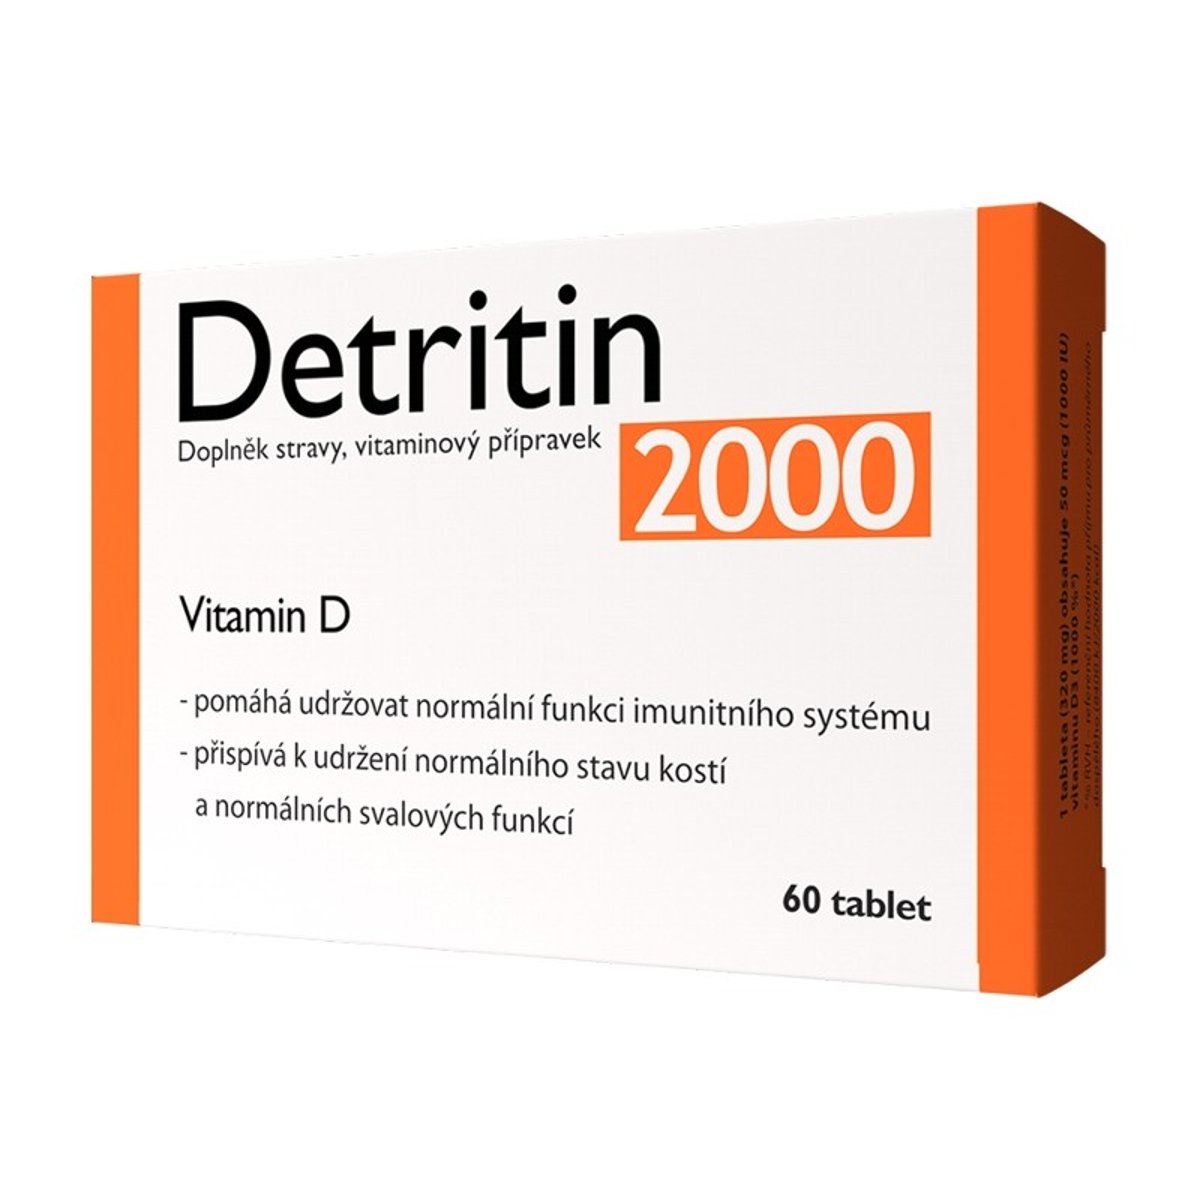 Detritin 2000 IU Vitamin D3 60 tablet